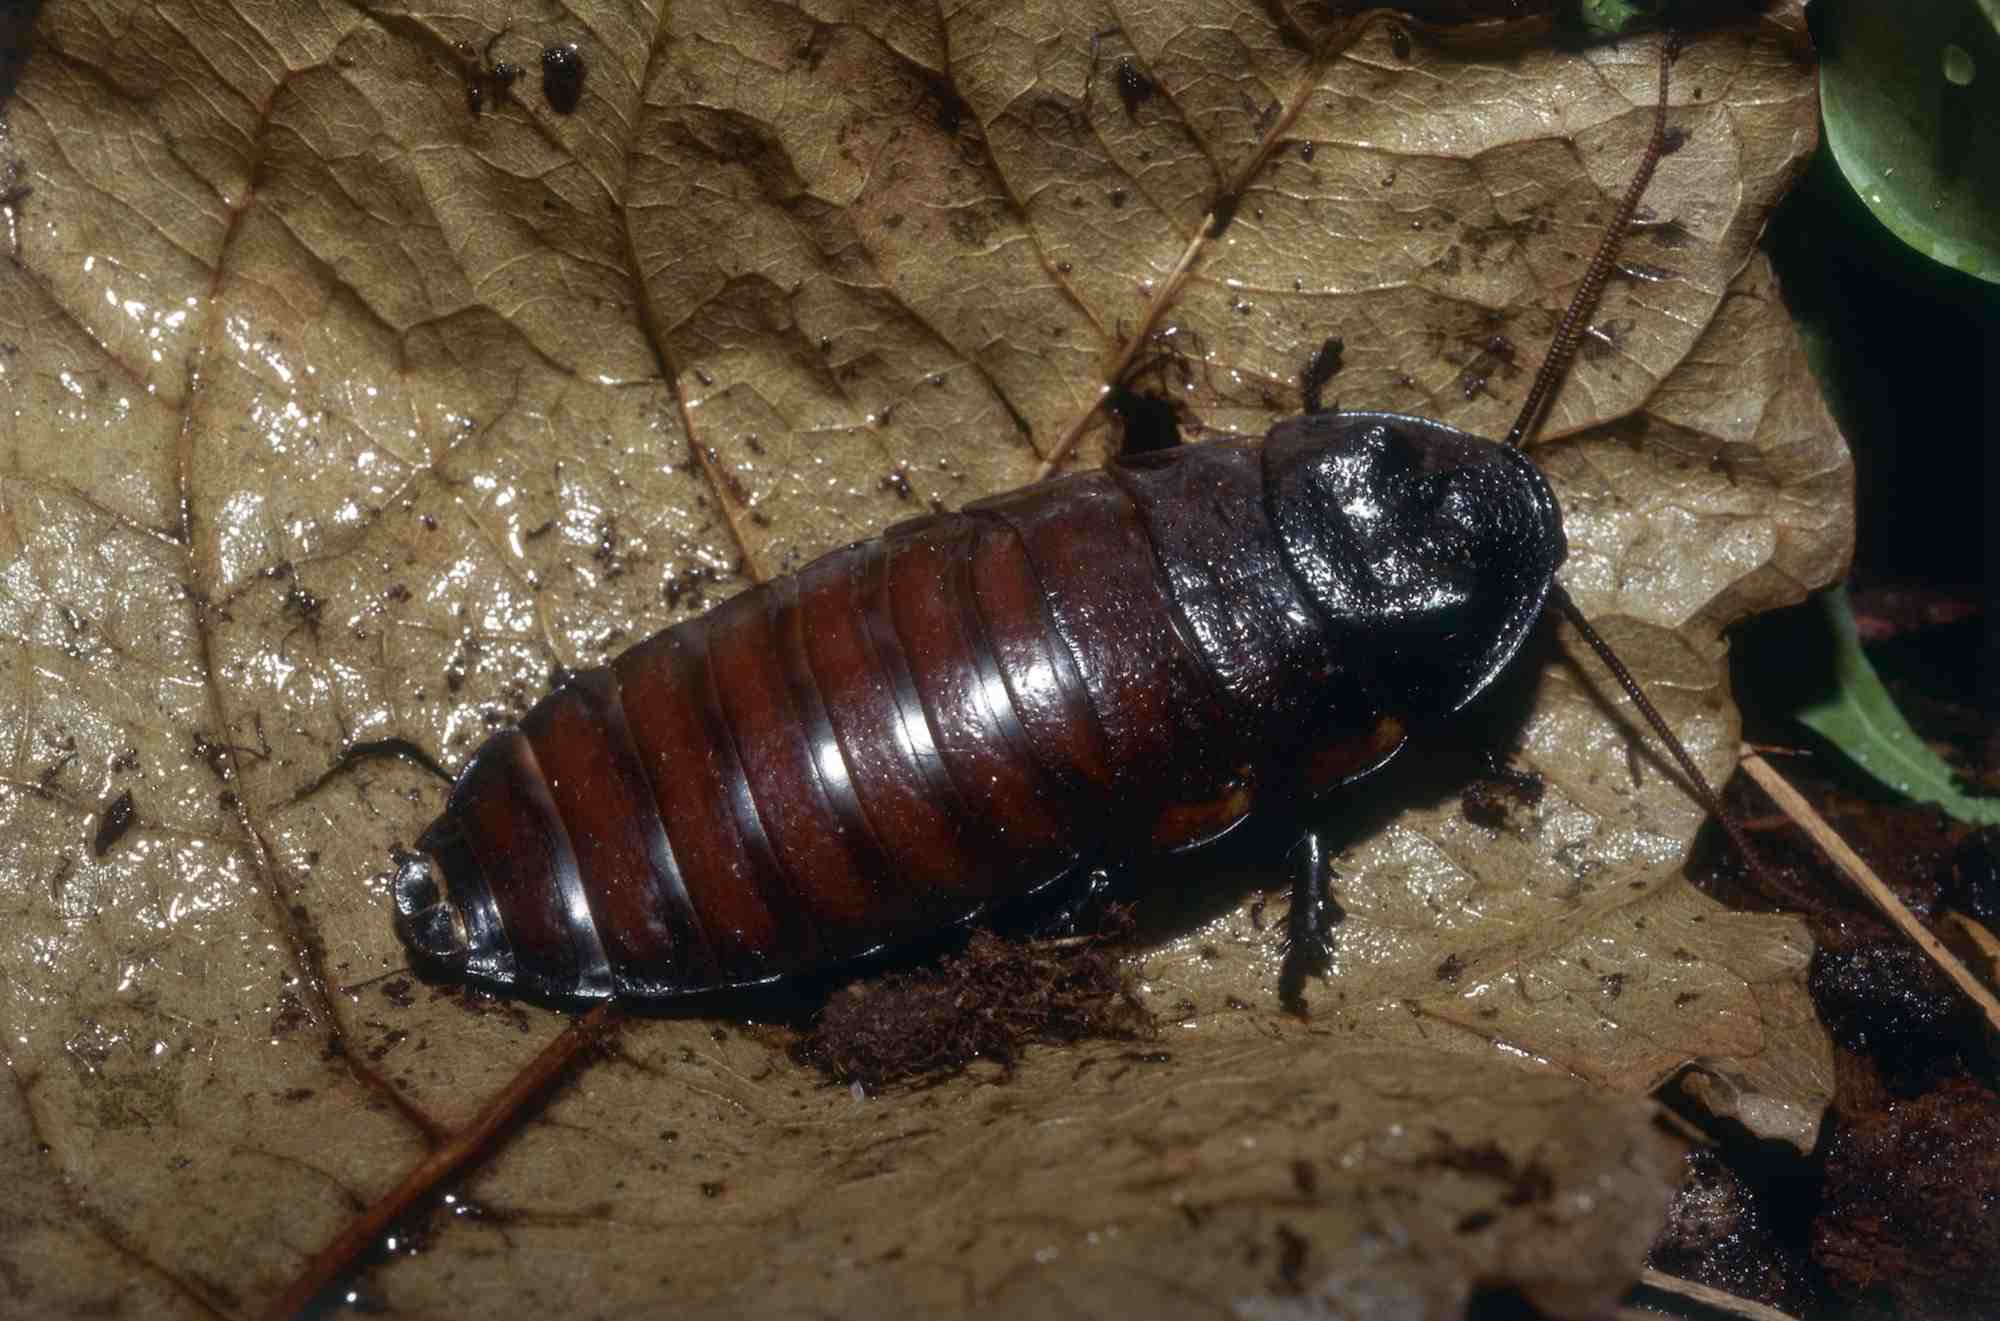 Madagascar hissing cockroach on a leaf